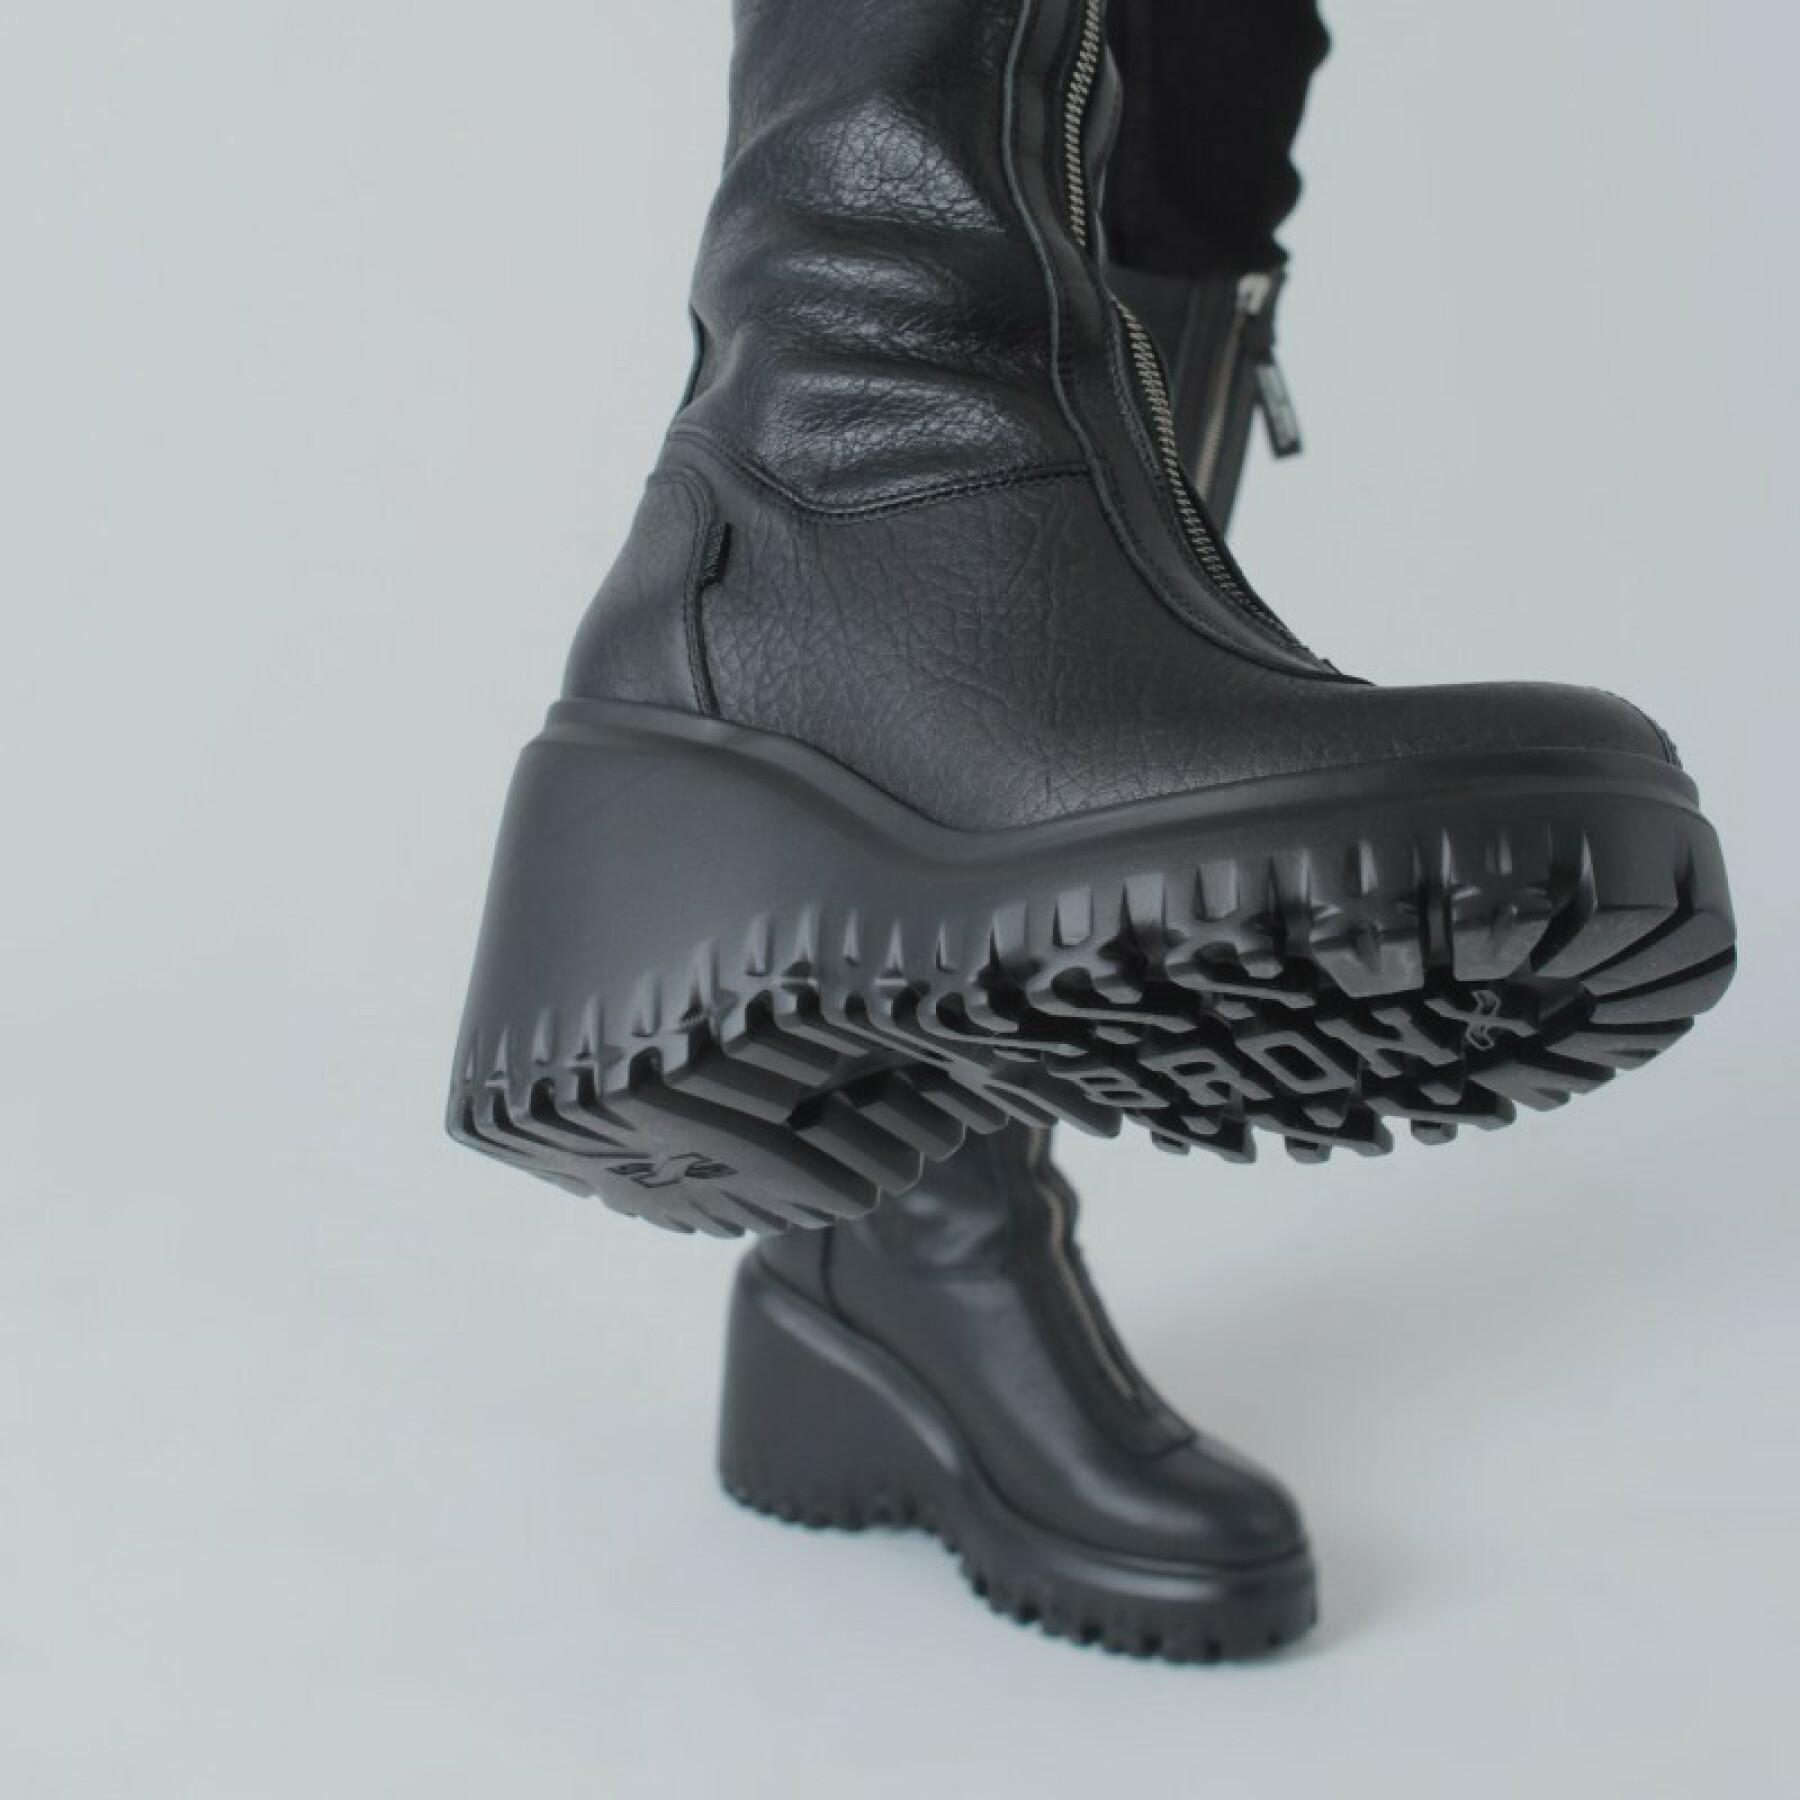 Women's boots Bronx 14225-G-01